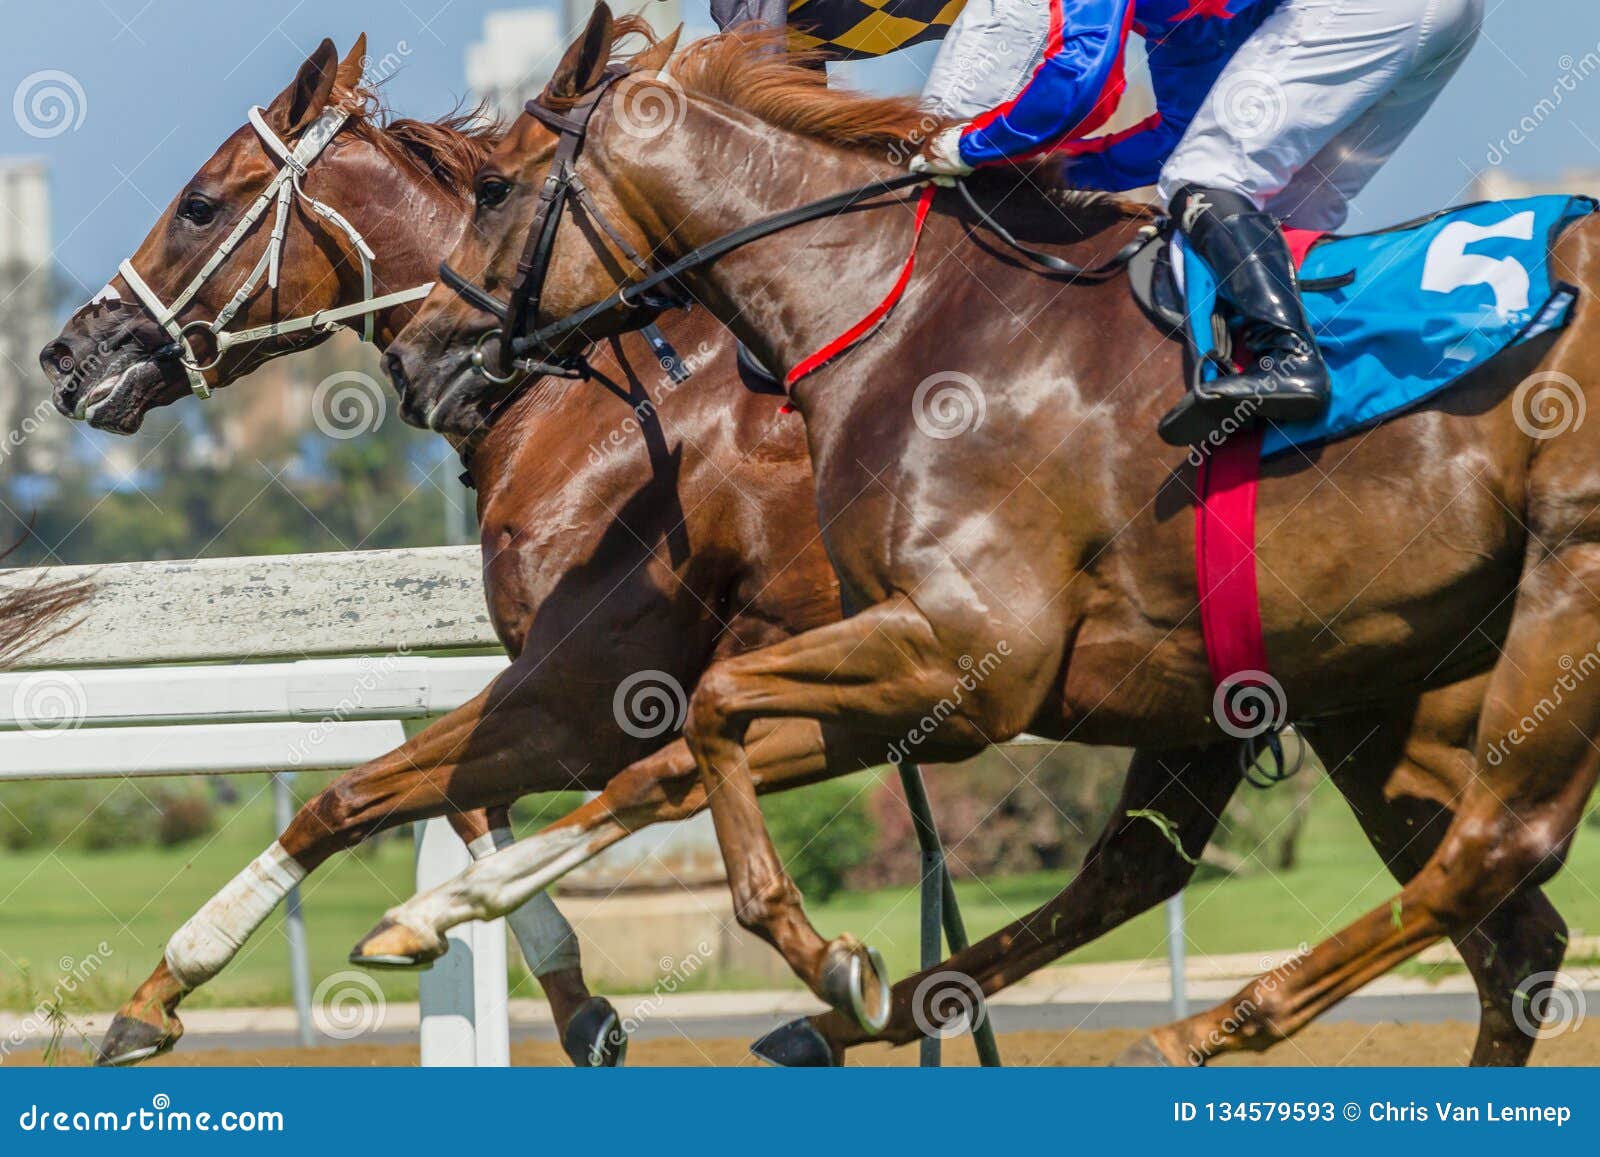 horses-racing-closeup-animal-body-action